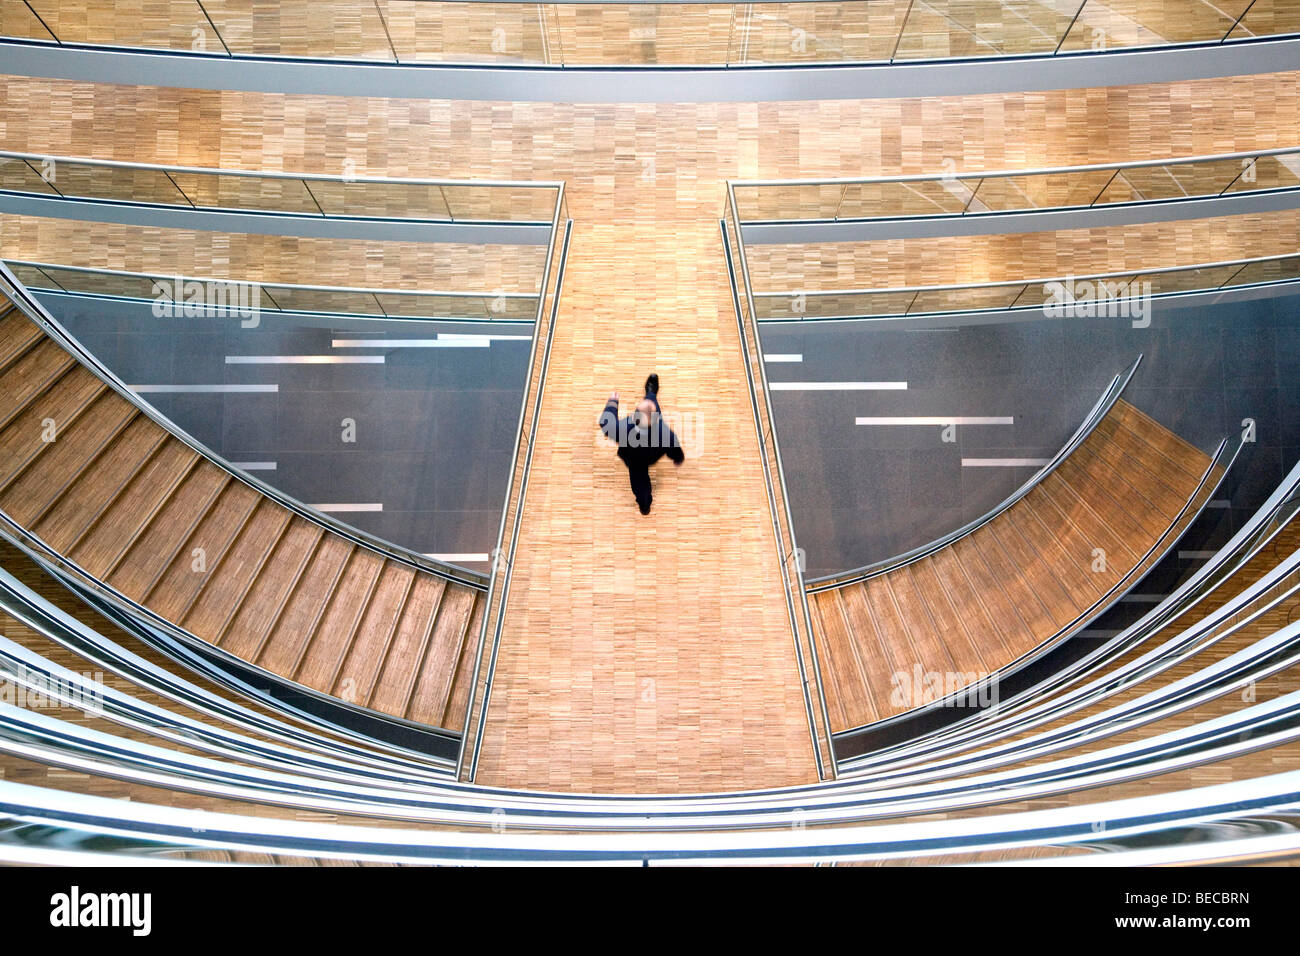 Escalier dans le centre de l'Aviation, Deutsche Lufthansa AG, Frankfurt am Main, Hesse, Germany, Europe Banque D'Images